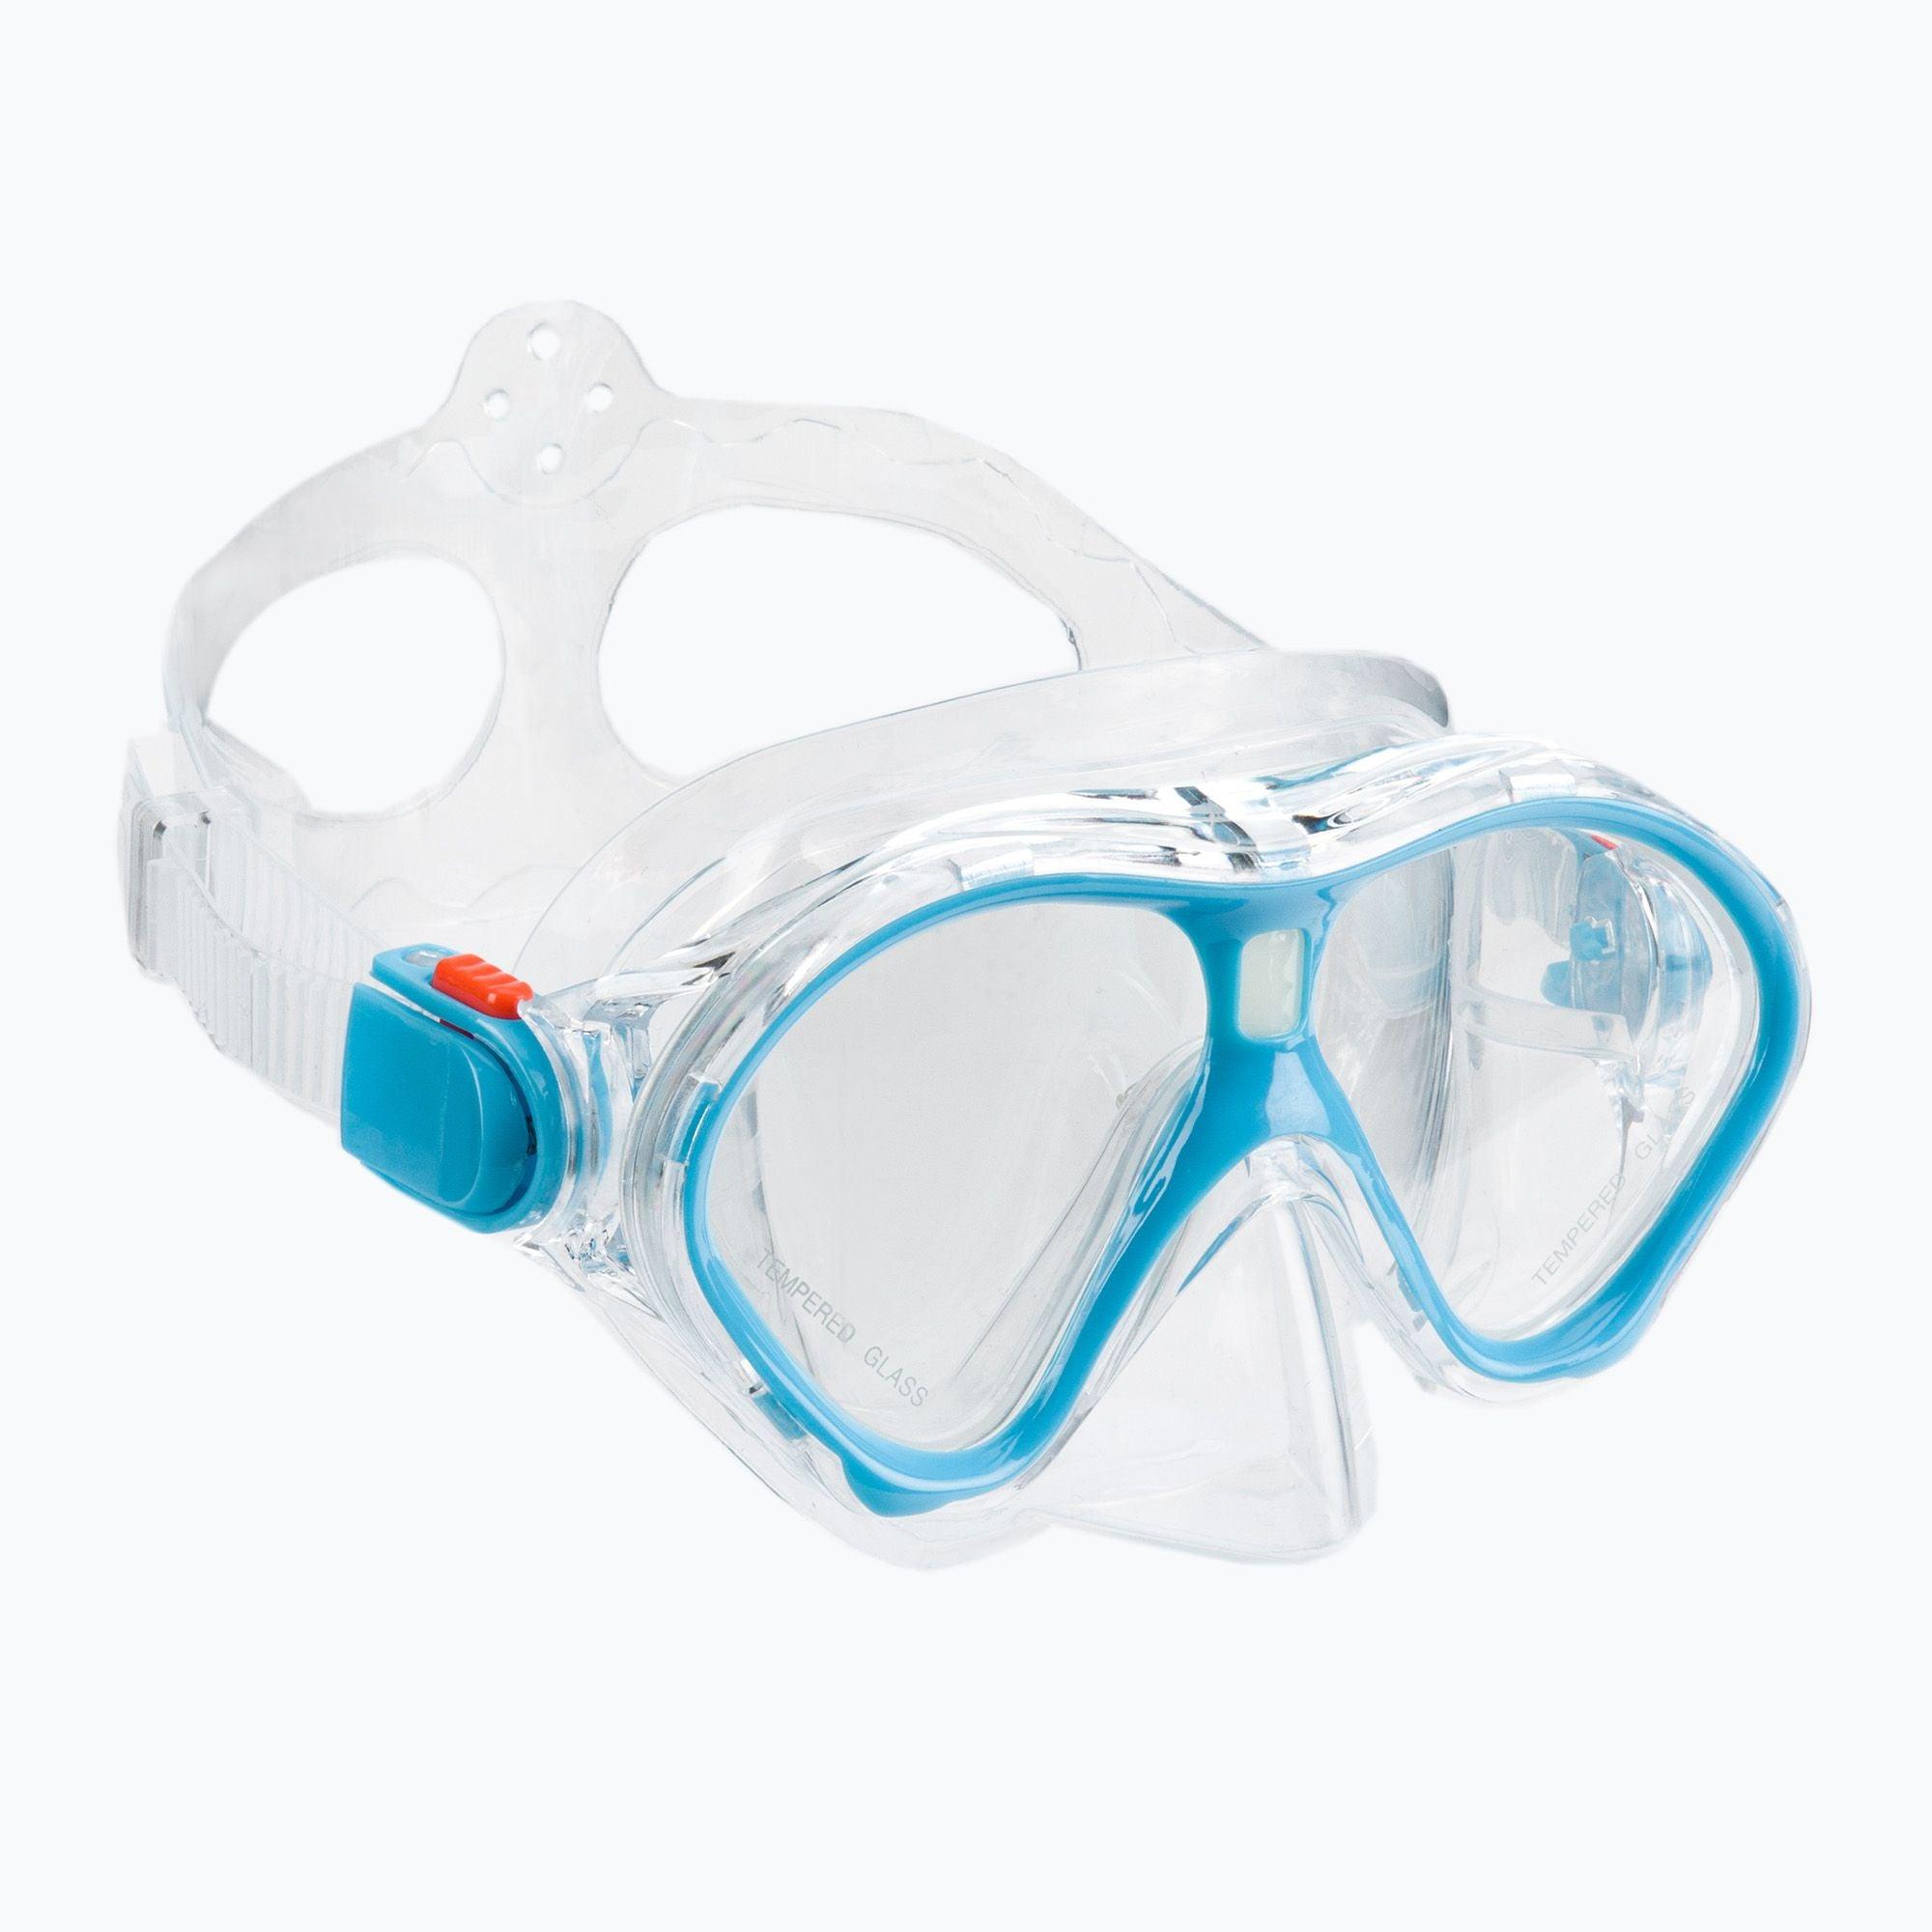 Aquastique: masque et tuba pour les enfants